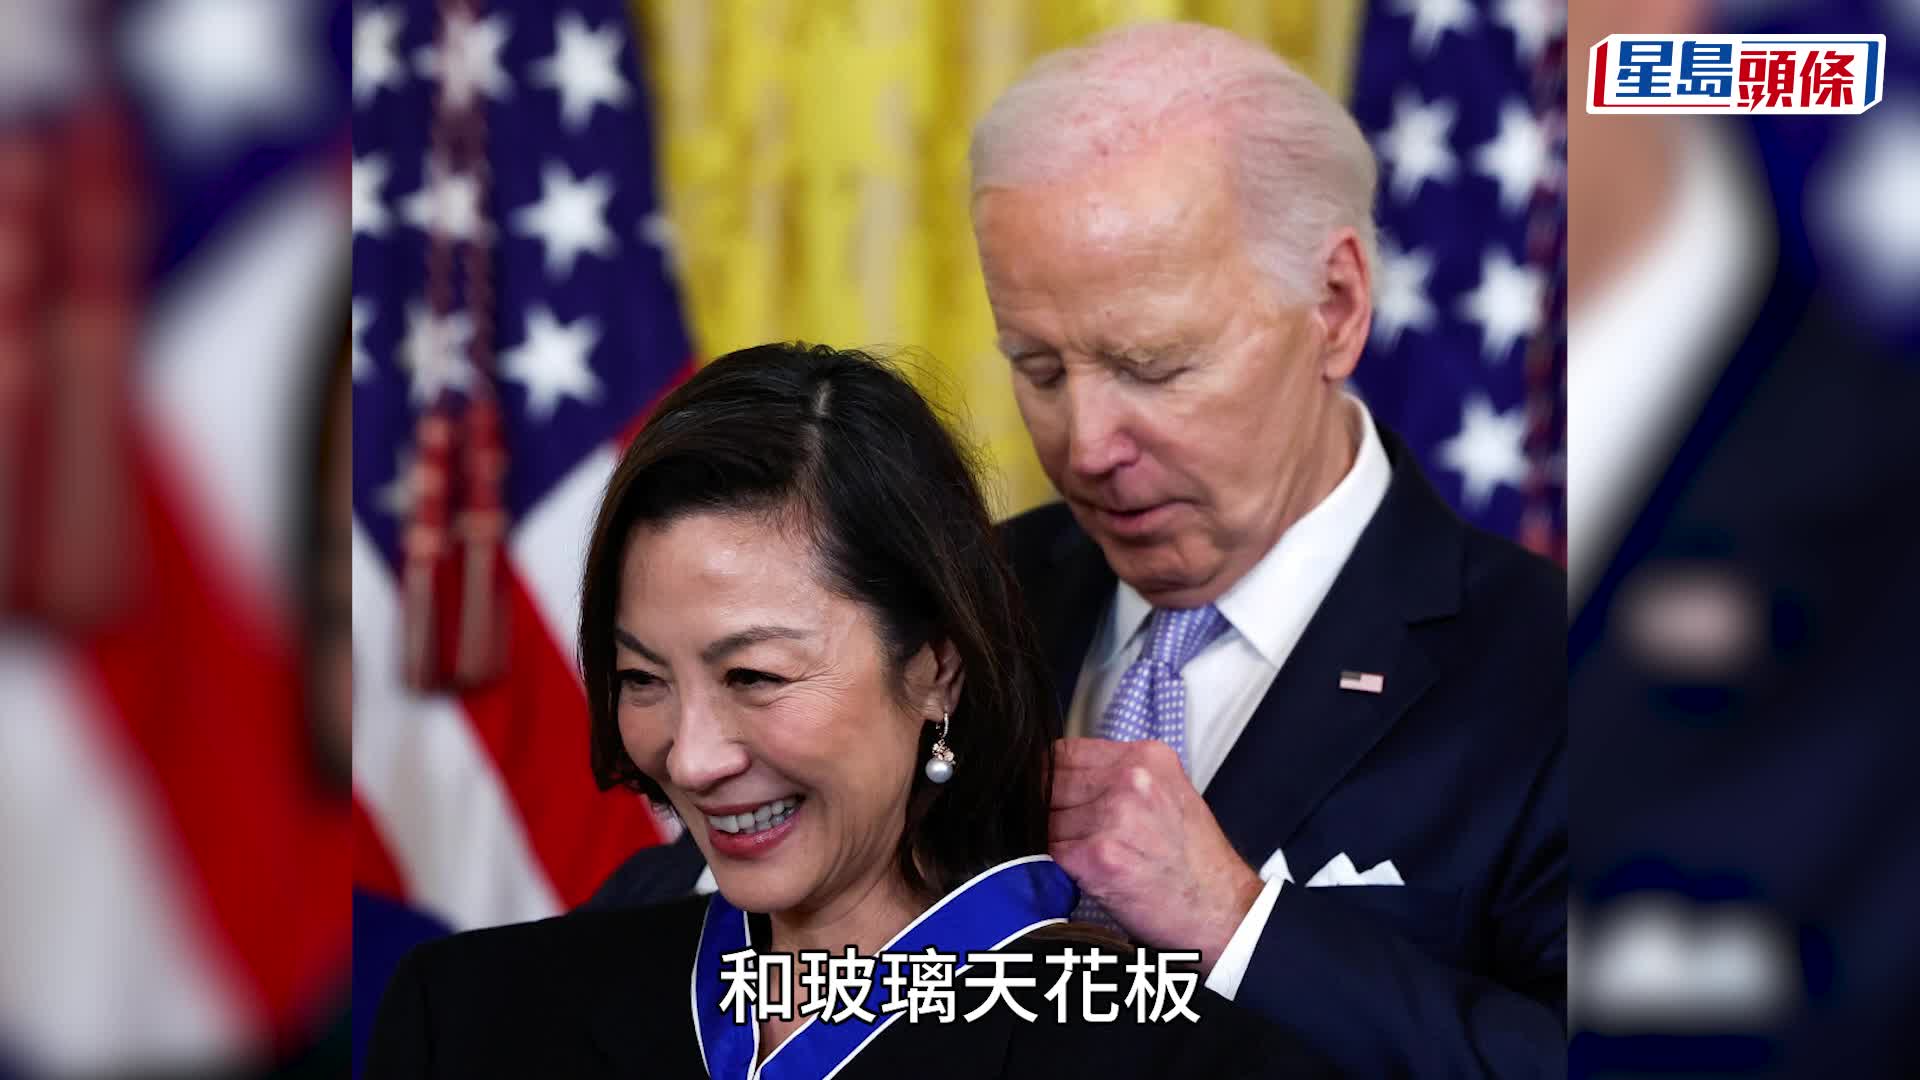 楊紫瓊獲美國總統拜登頒授最高榮譽勳章 成首位獲此勳章華裔女演員